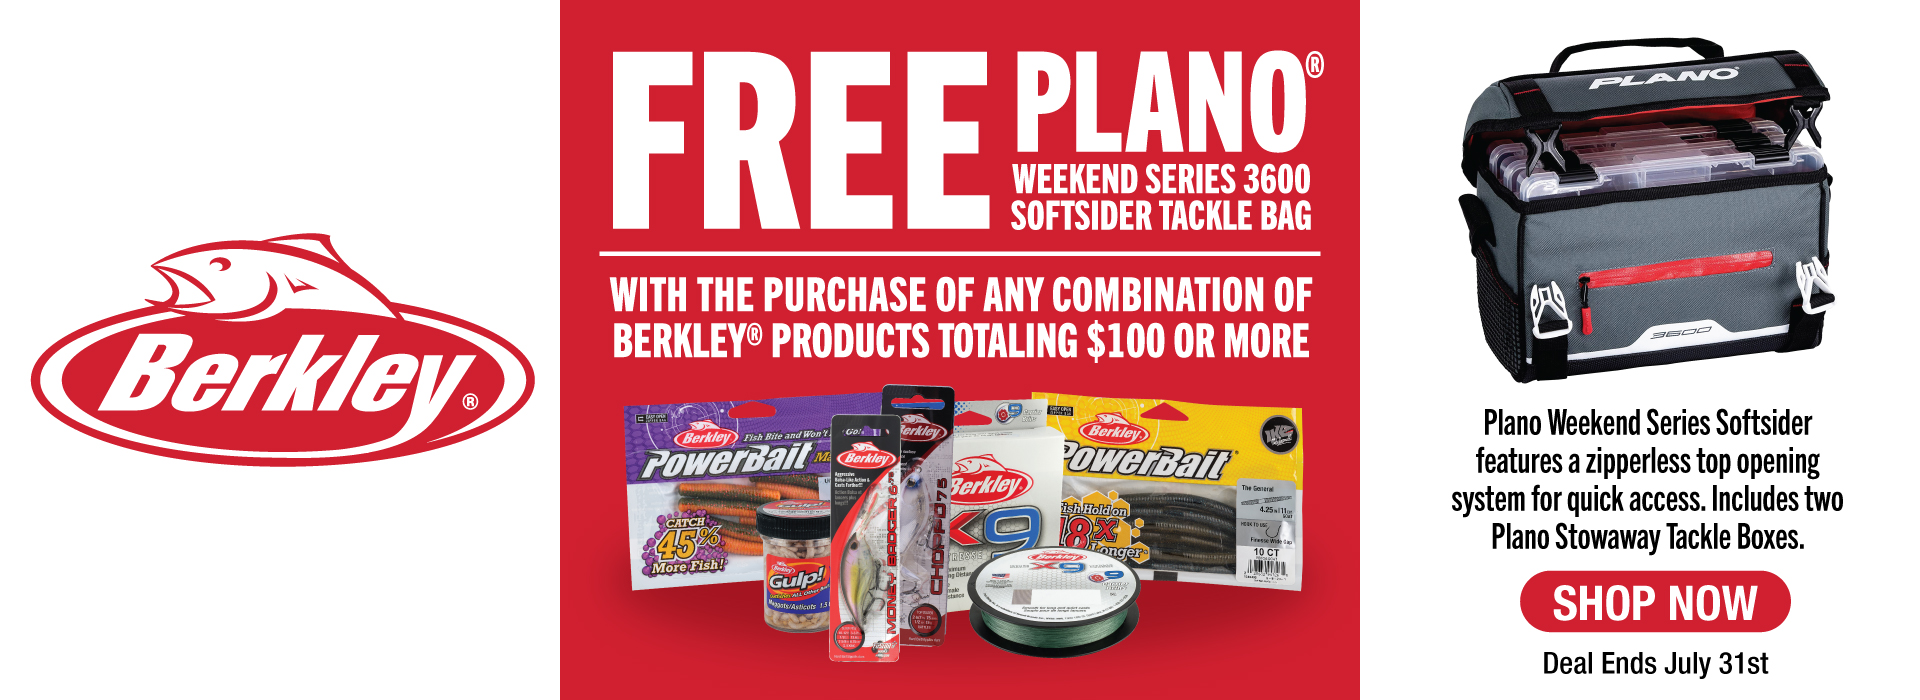 Spend $100 on Berkley, Get a Free Plano Weekender Series Bag